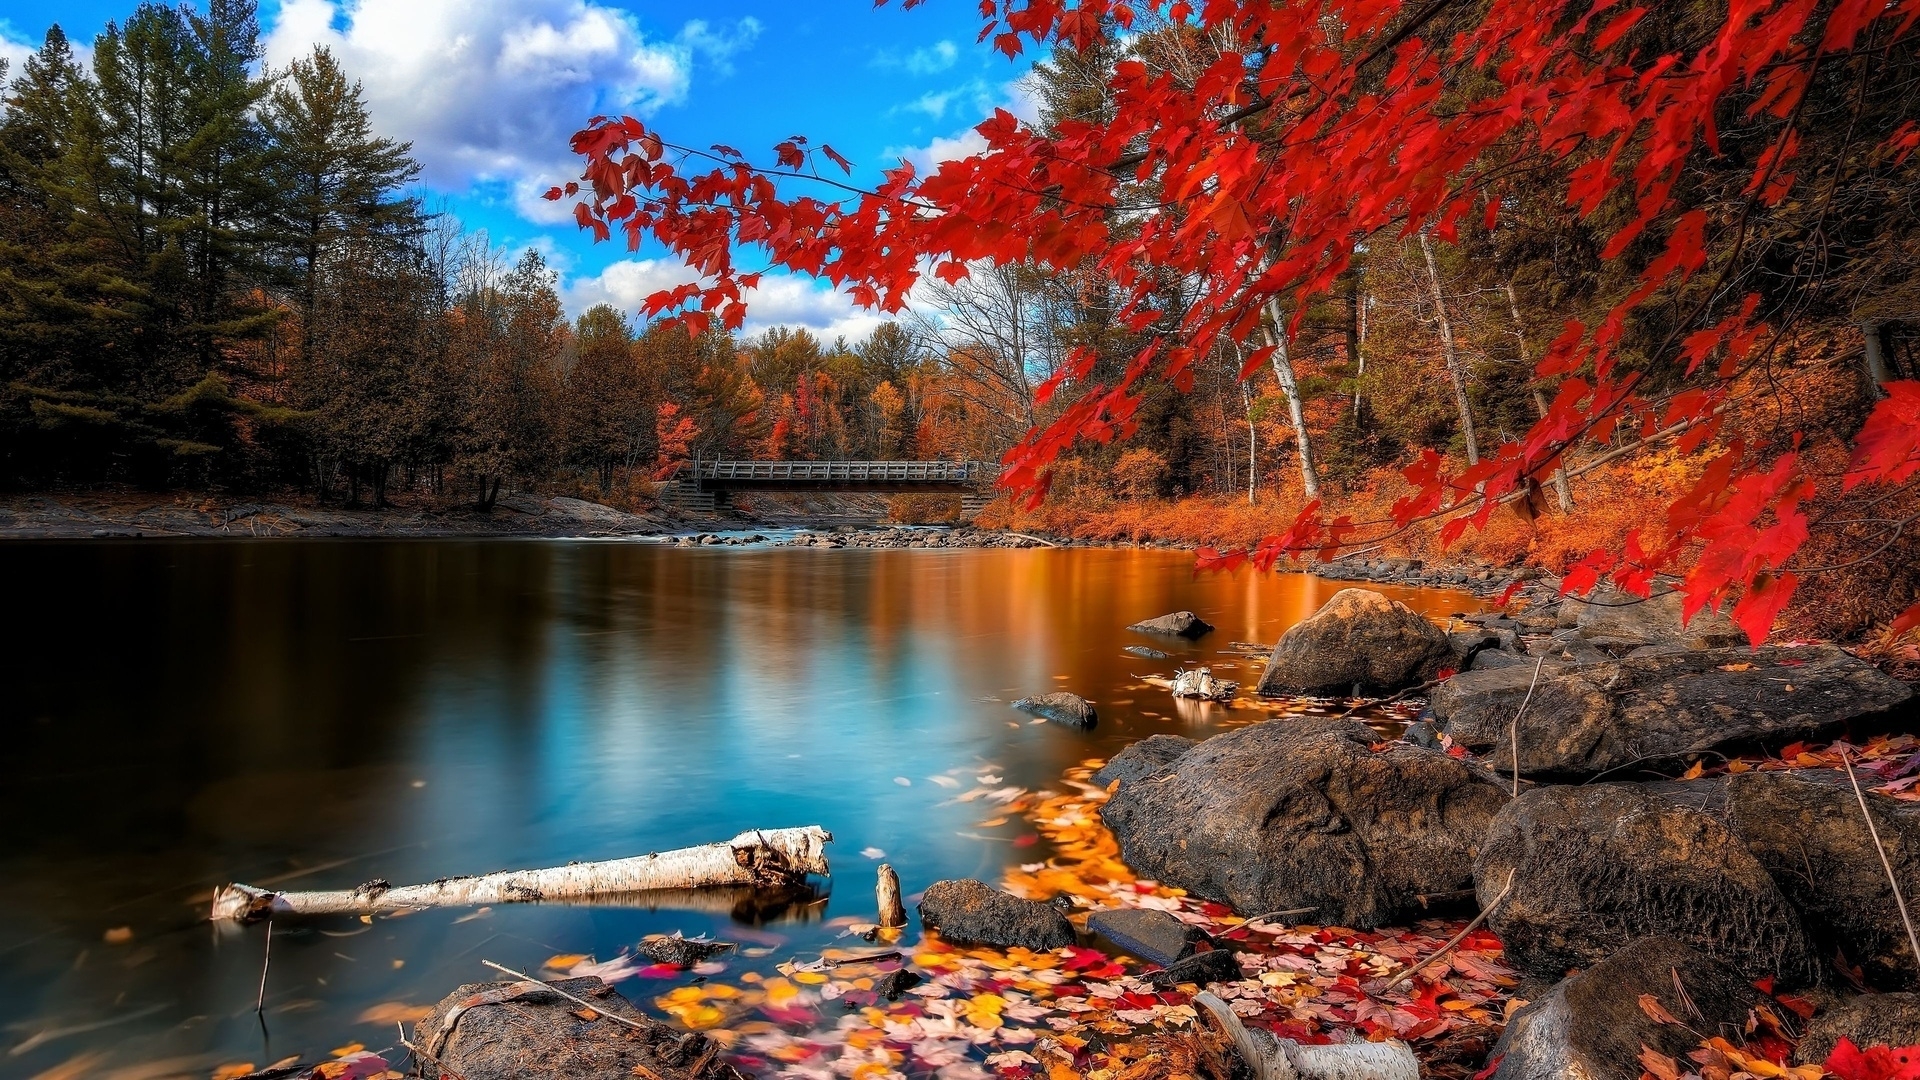 10 Best Autumn Scenery Wallpaper Hd Full Hd 1920×1080 For Pc Desktop 2023